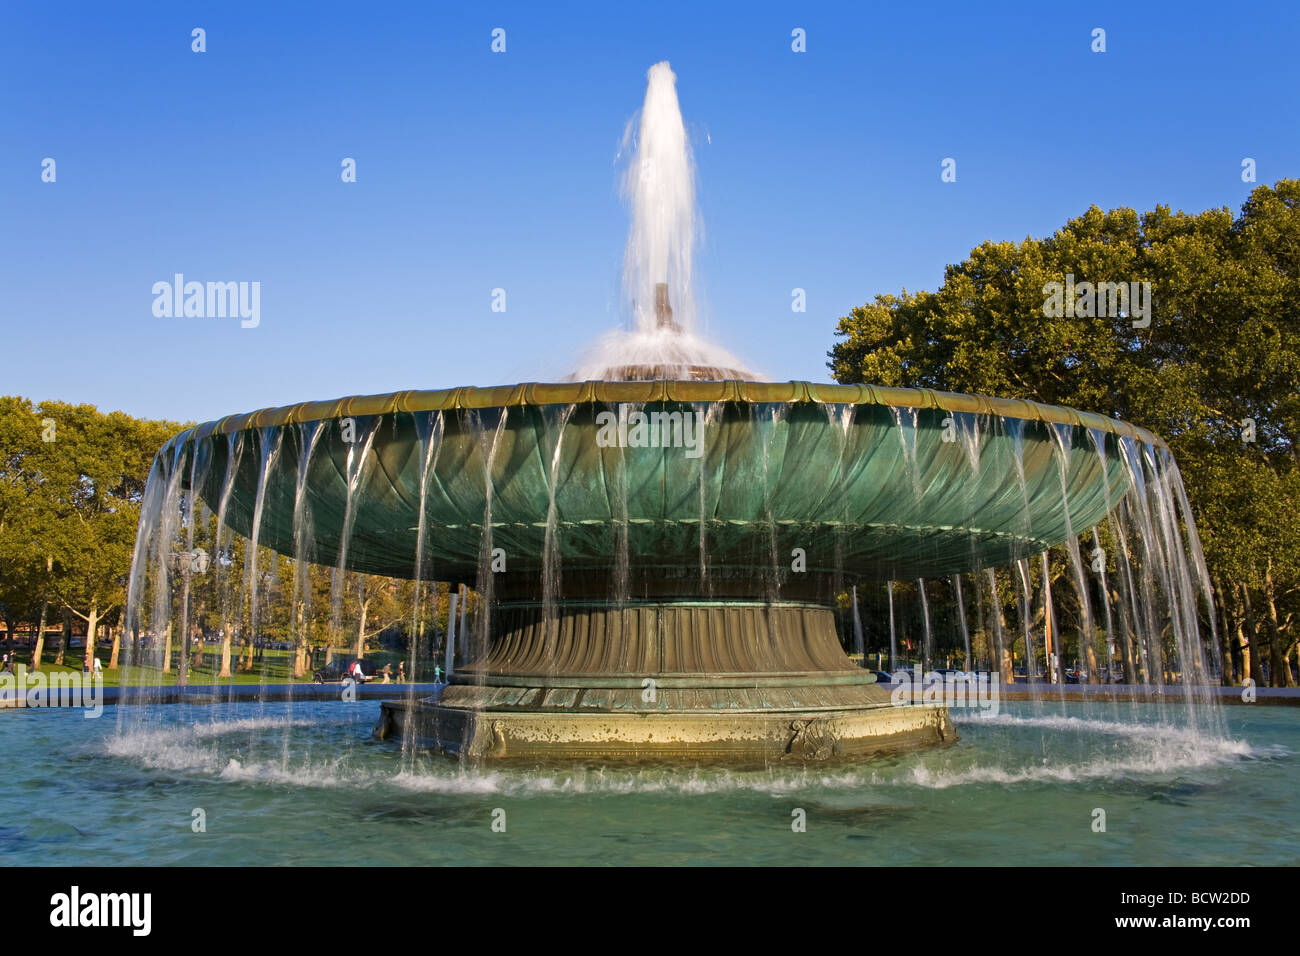 Fontaine dans un parc, Eakins ovale, Fairmount Park, Philadelphia Museum of Art, Philadelphie, Pennsylvanie, USA Banque D'Images